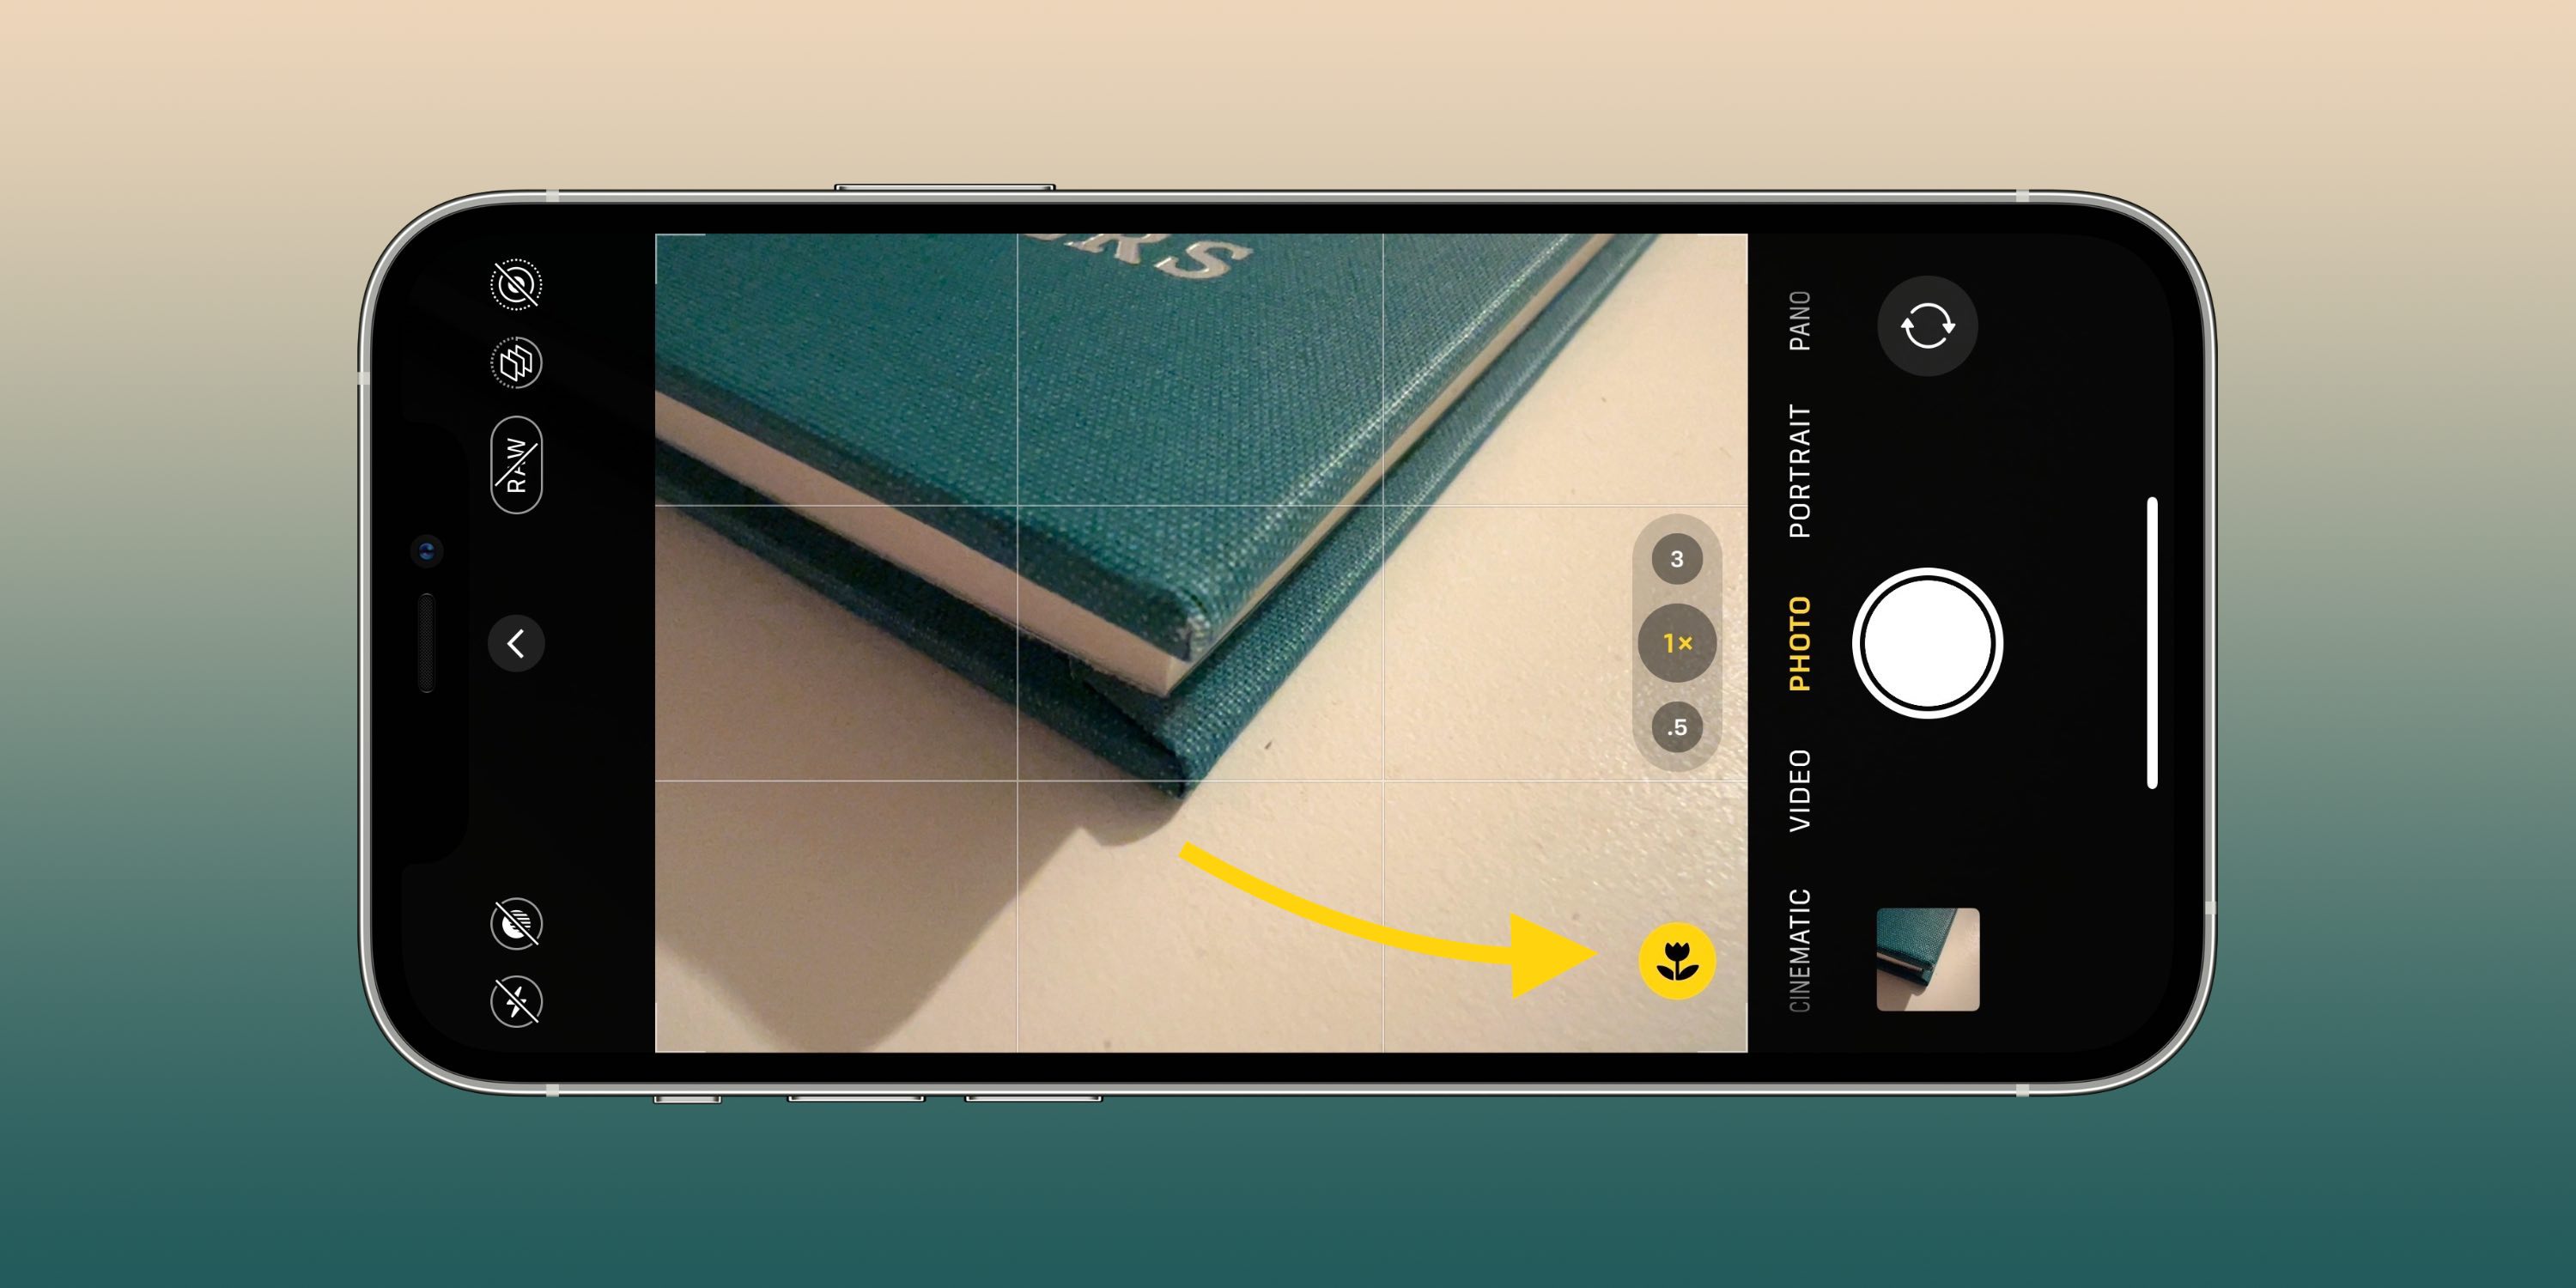 Estos ajustes de la cámara pueden ayudarte a tomar mejores fotos y videos en tu iPhone